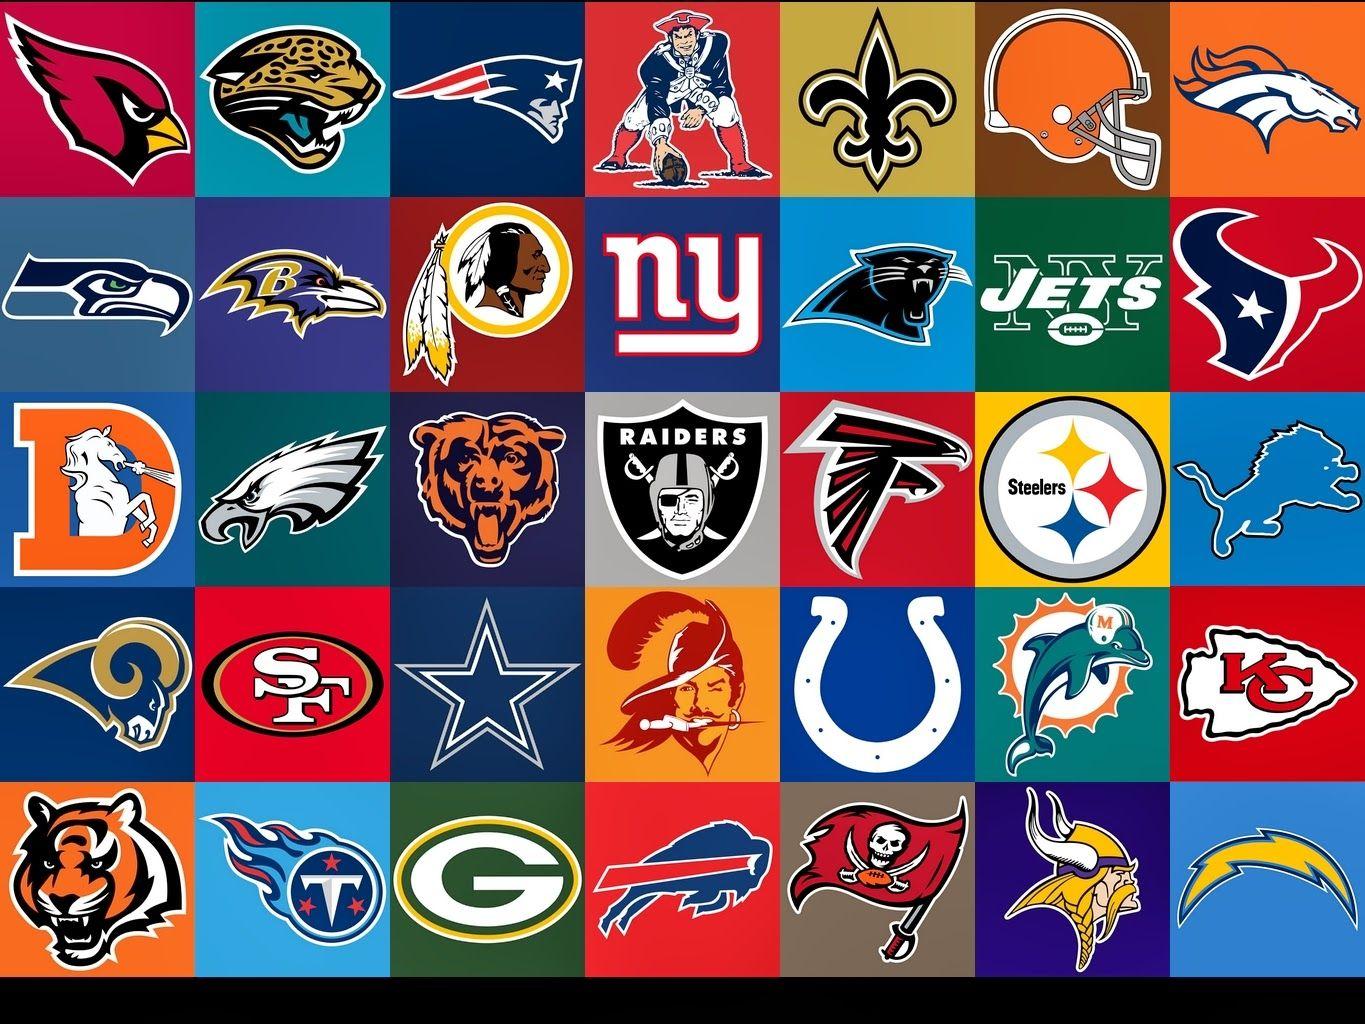 NFL Football Team Logo - 12 Best Logos of the NFL! #Superbowl - FlagRunners